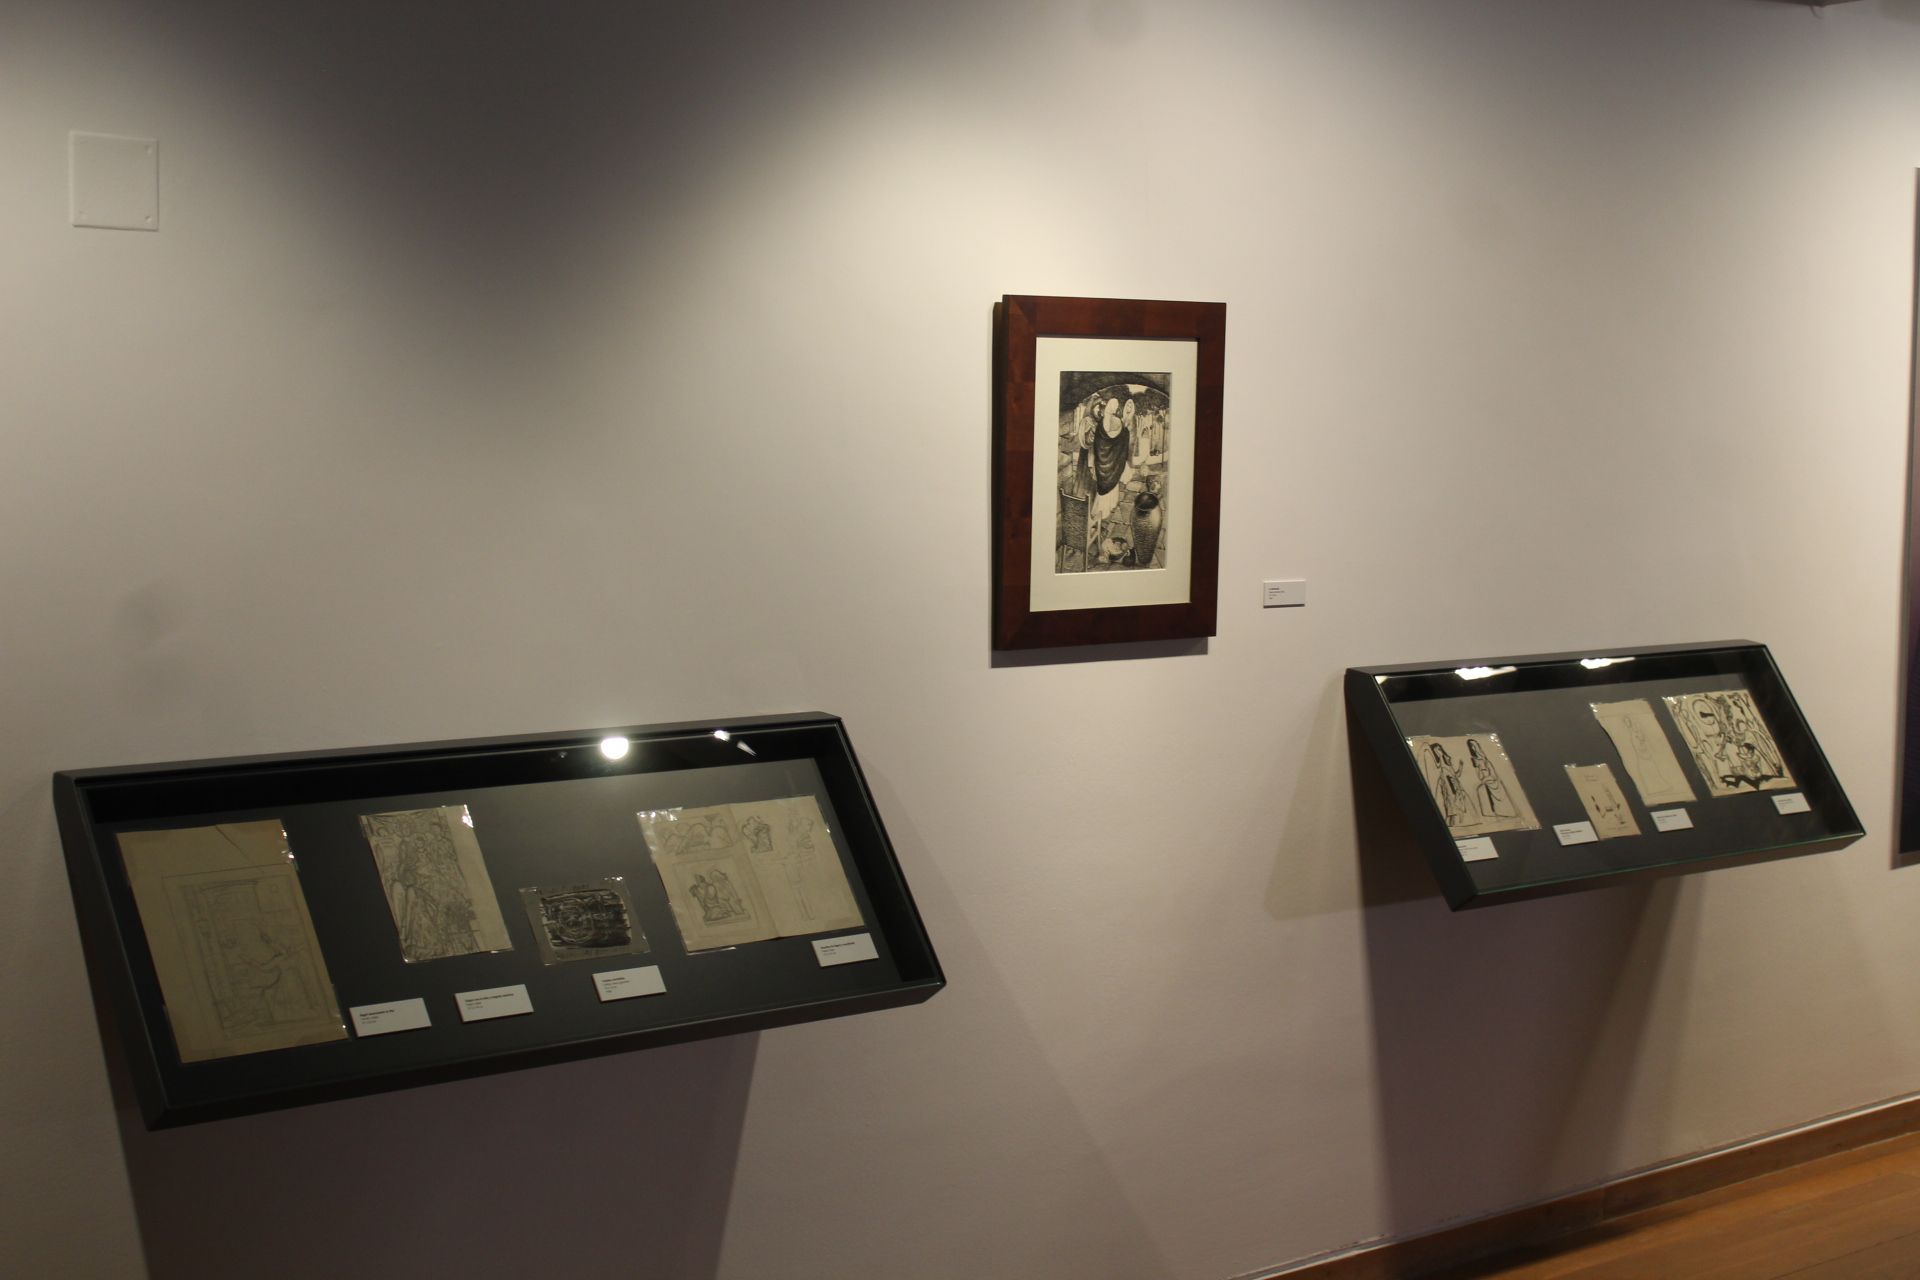 La Universidad de Salamanca inaugura una exposición de dibujos de Zacarías González.